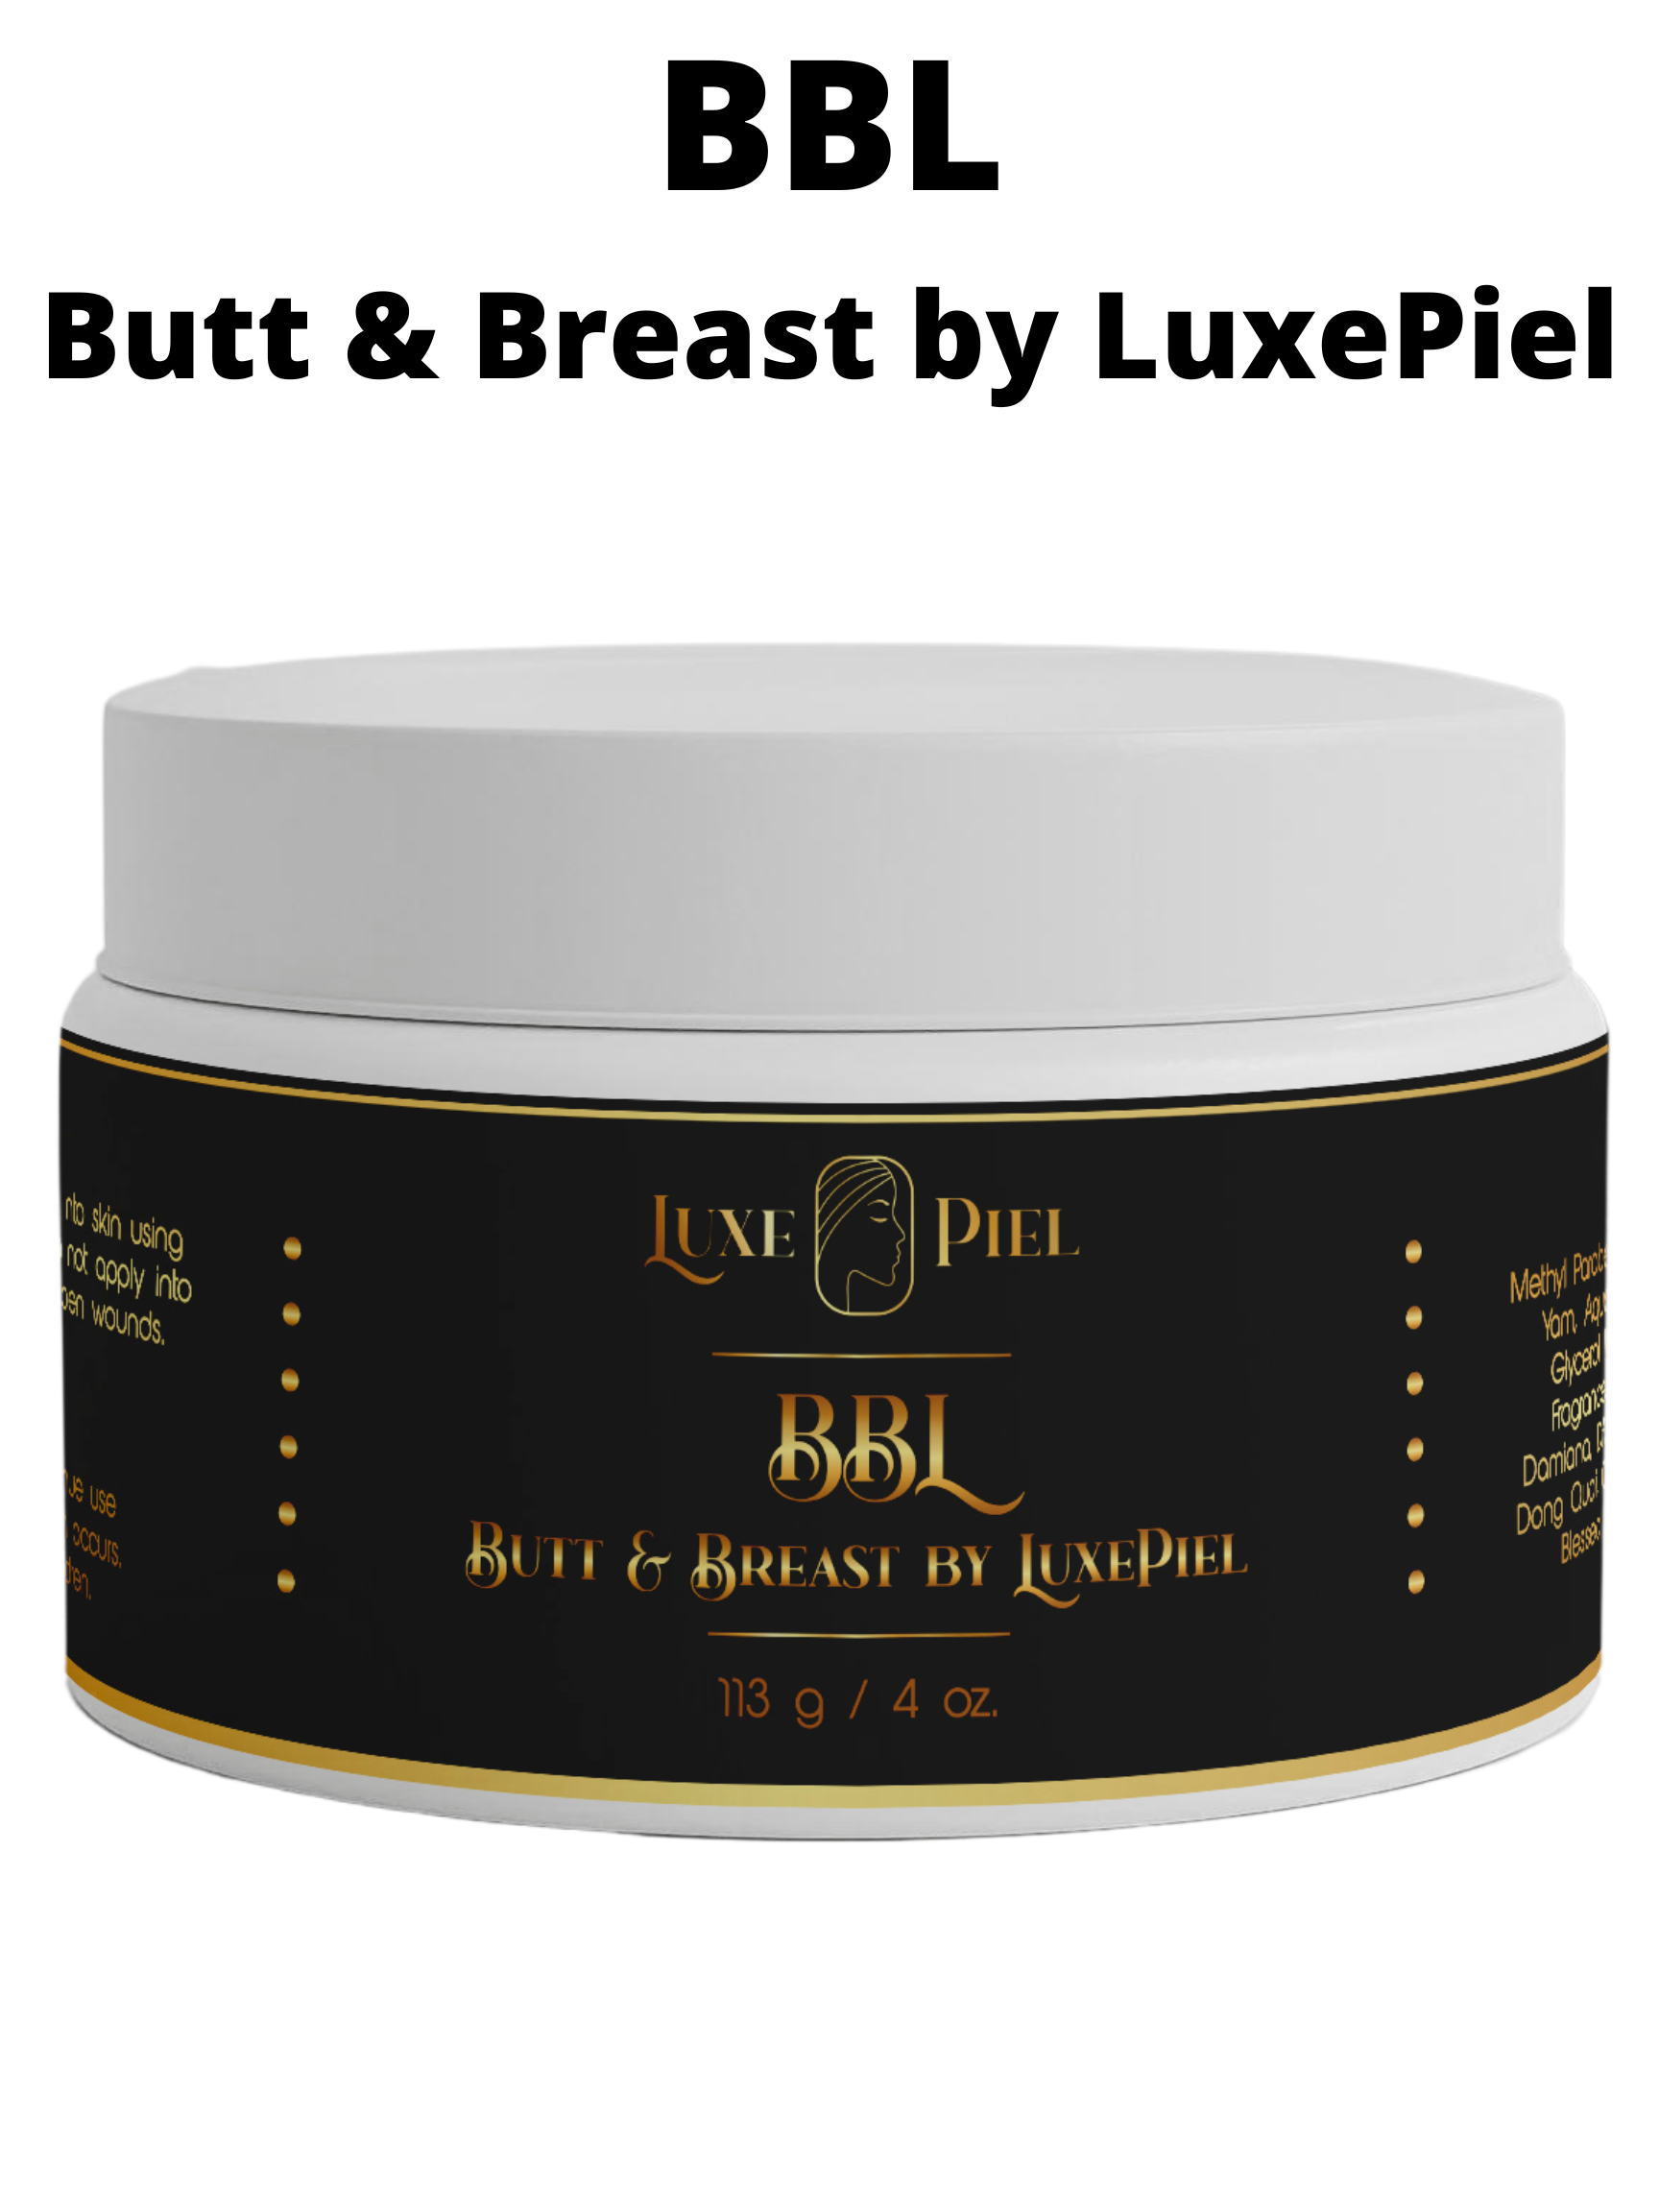 BBL Butt & Breast by LuxePiel – Luxe Piel